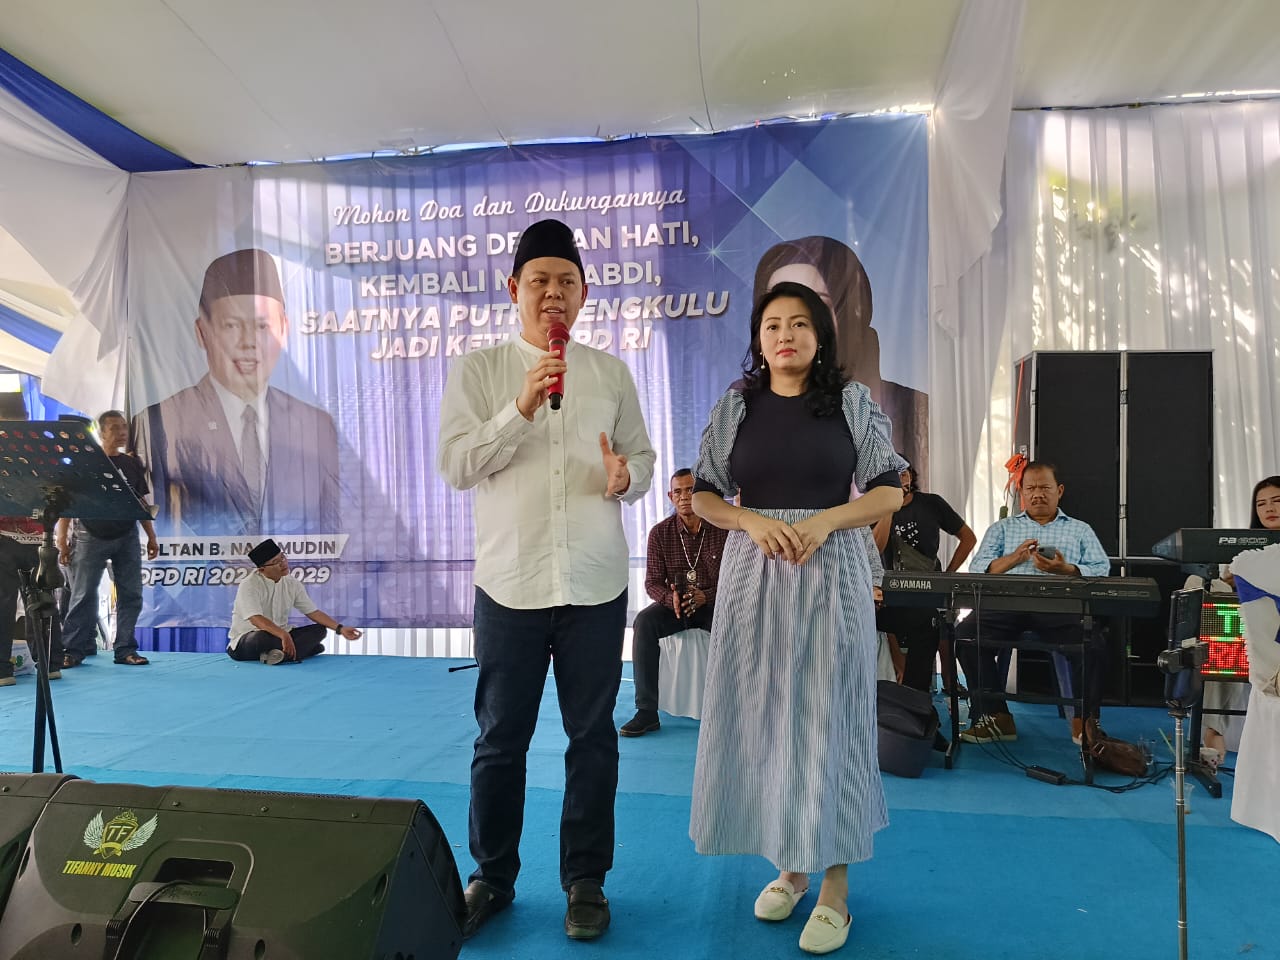 Mohon Doa dan Dukungan, Sultan B Najamudin: Sudah Saatnya Putra Bengkulu Jadi Ketua DPD RI